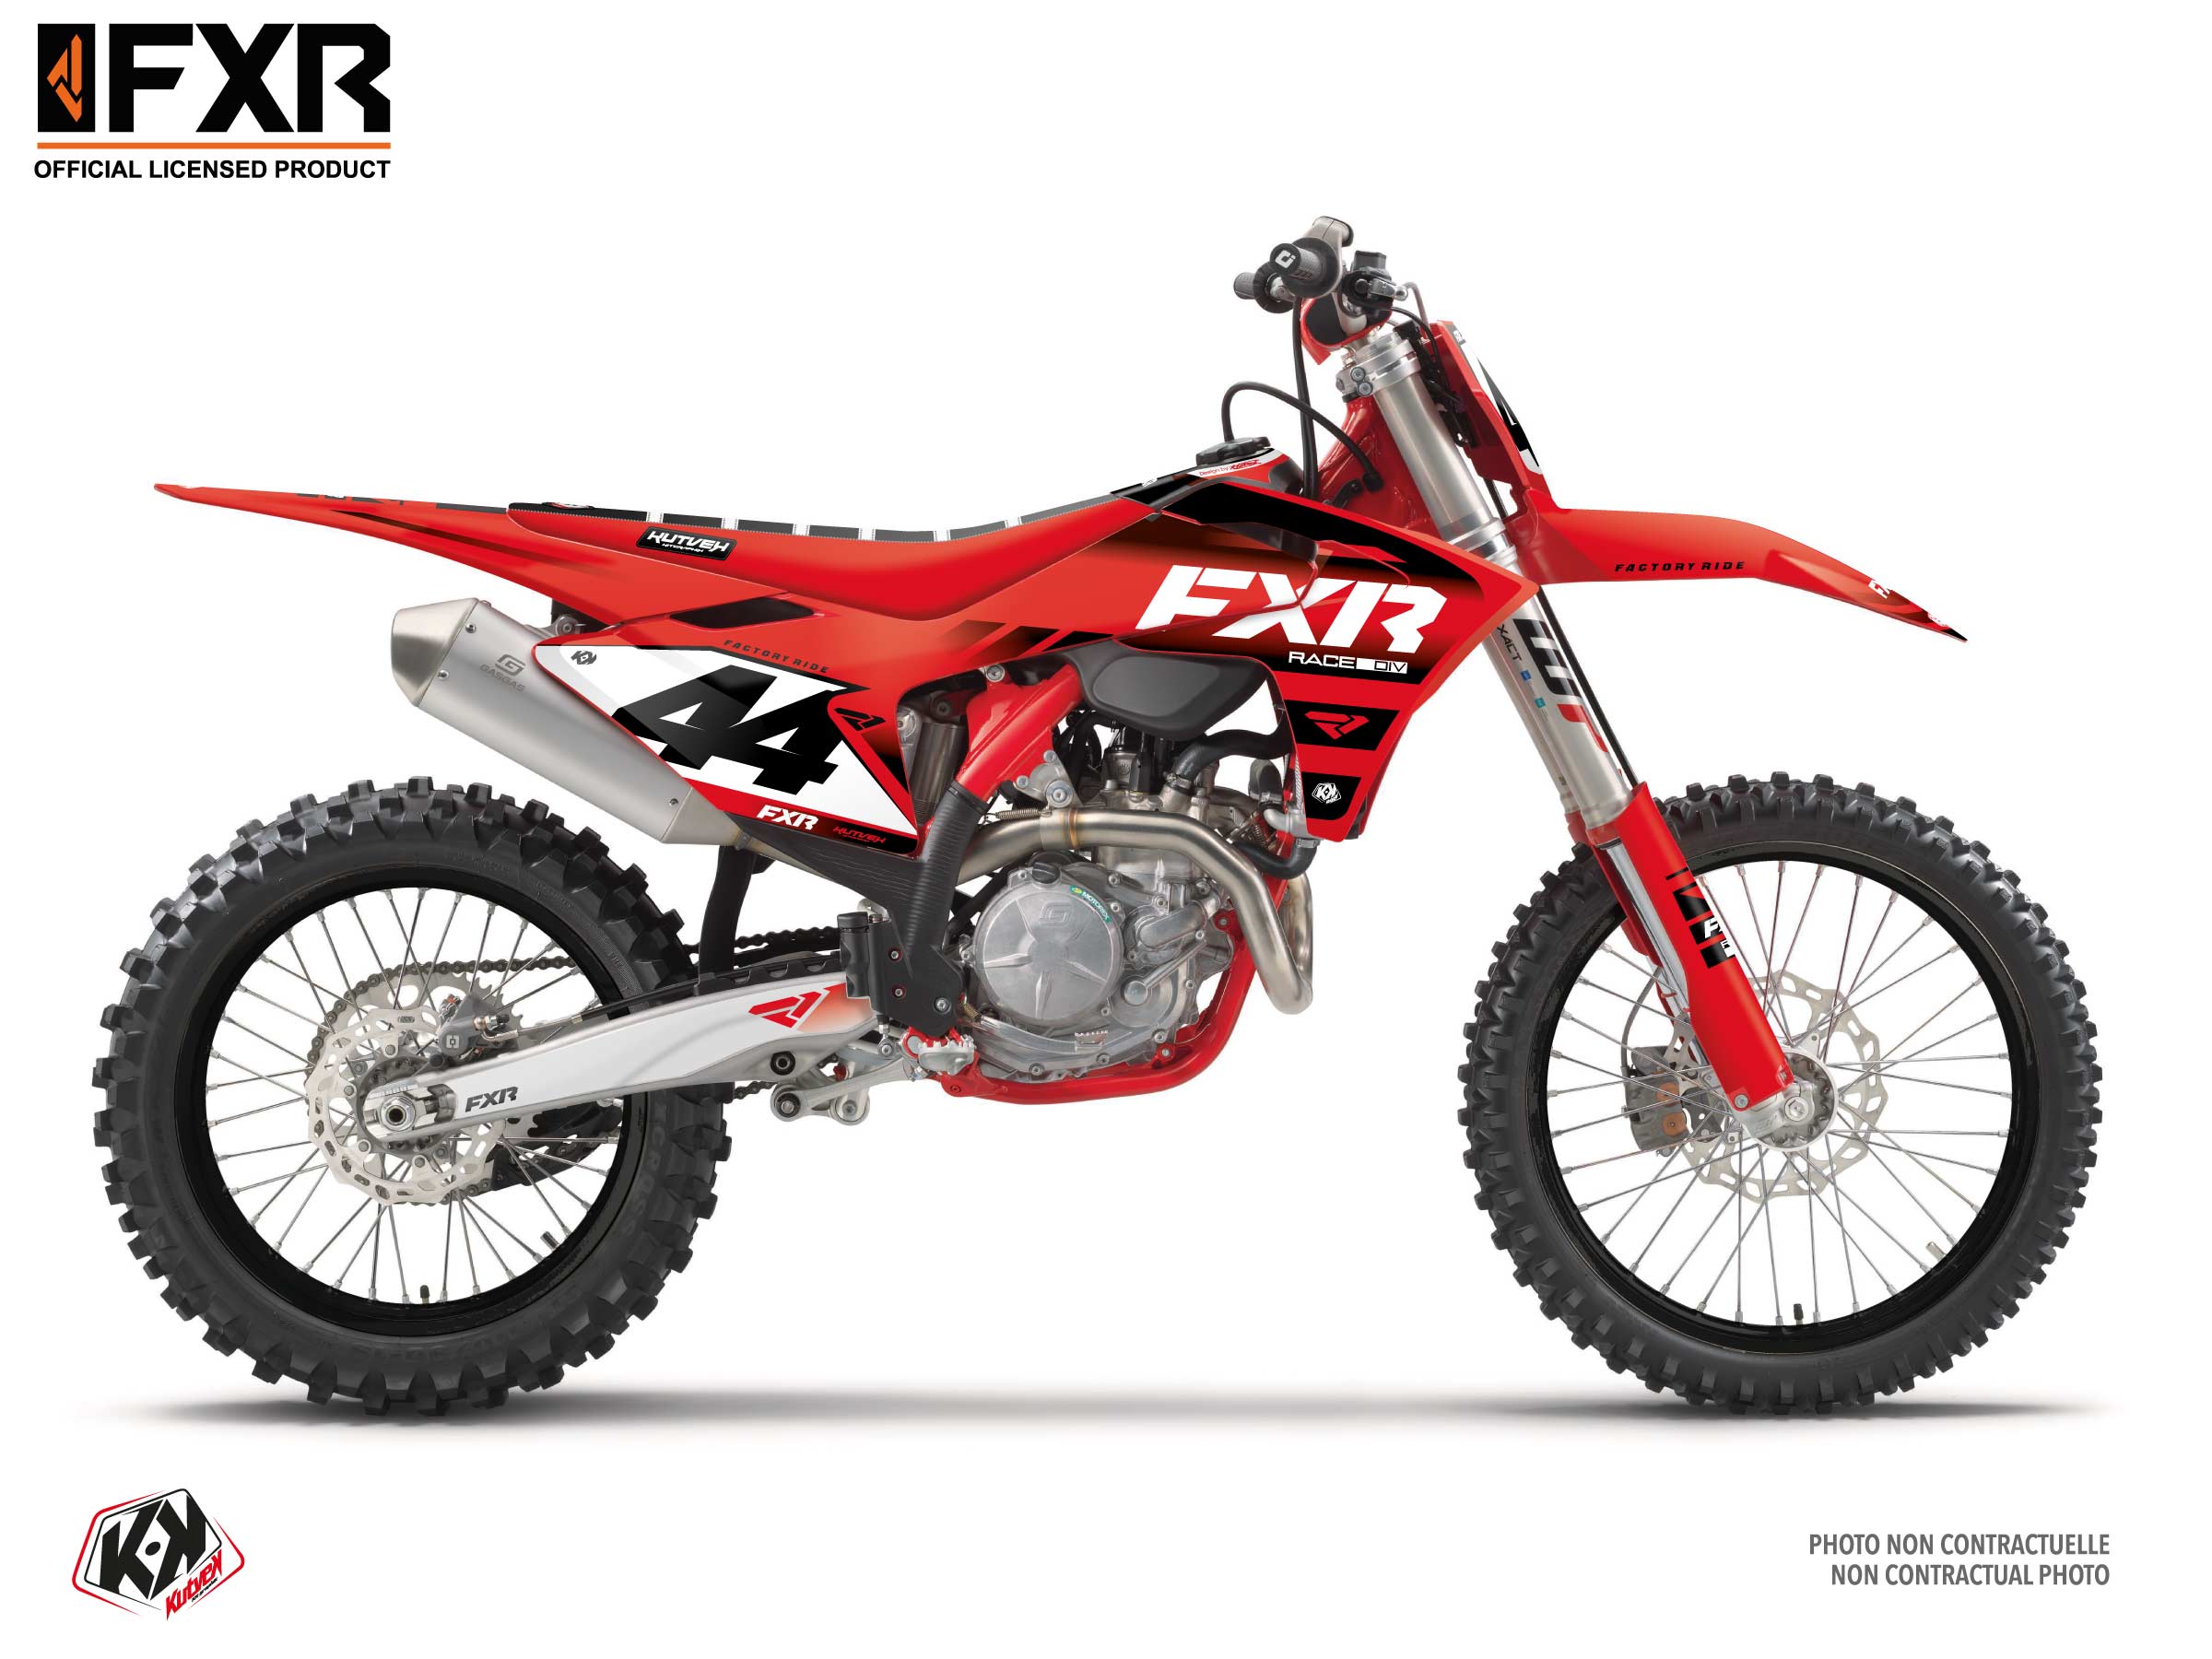 Gasgas Ex 350 F Dirt Bike Fxr Revo Graphic Kit Red